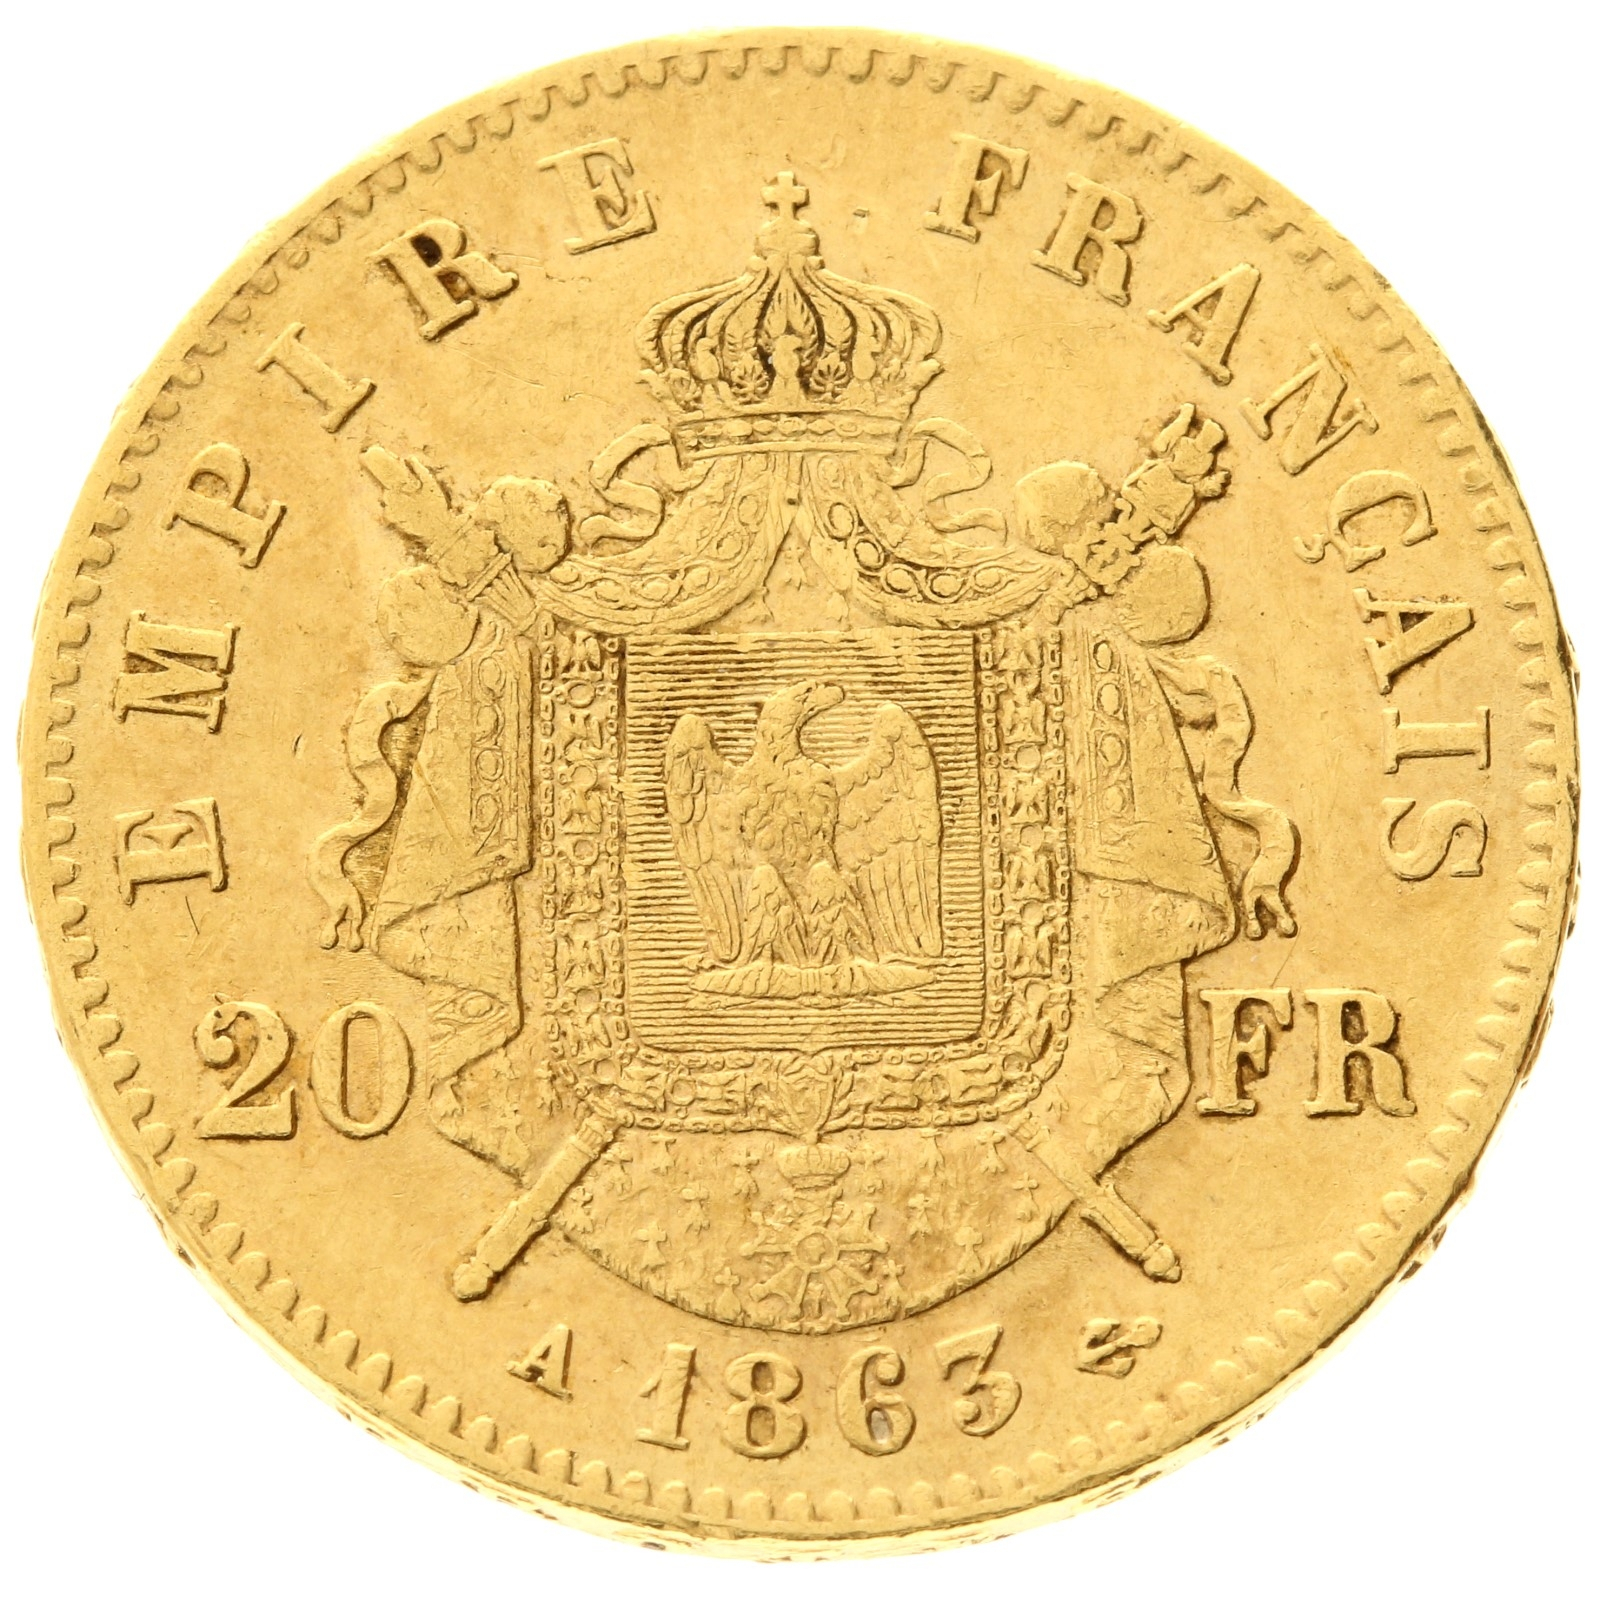 France - 20 francs - 1863 - A - Napoleon III